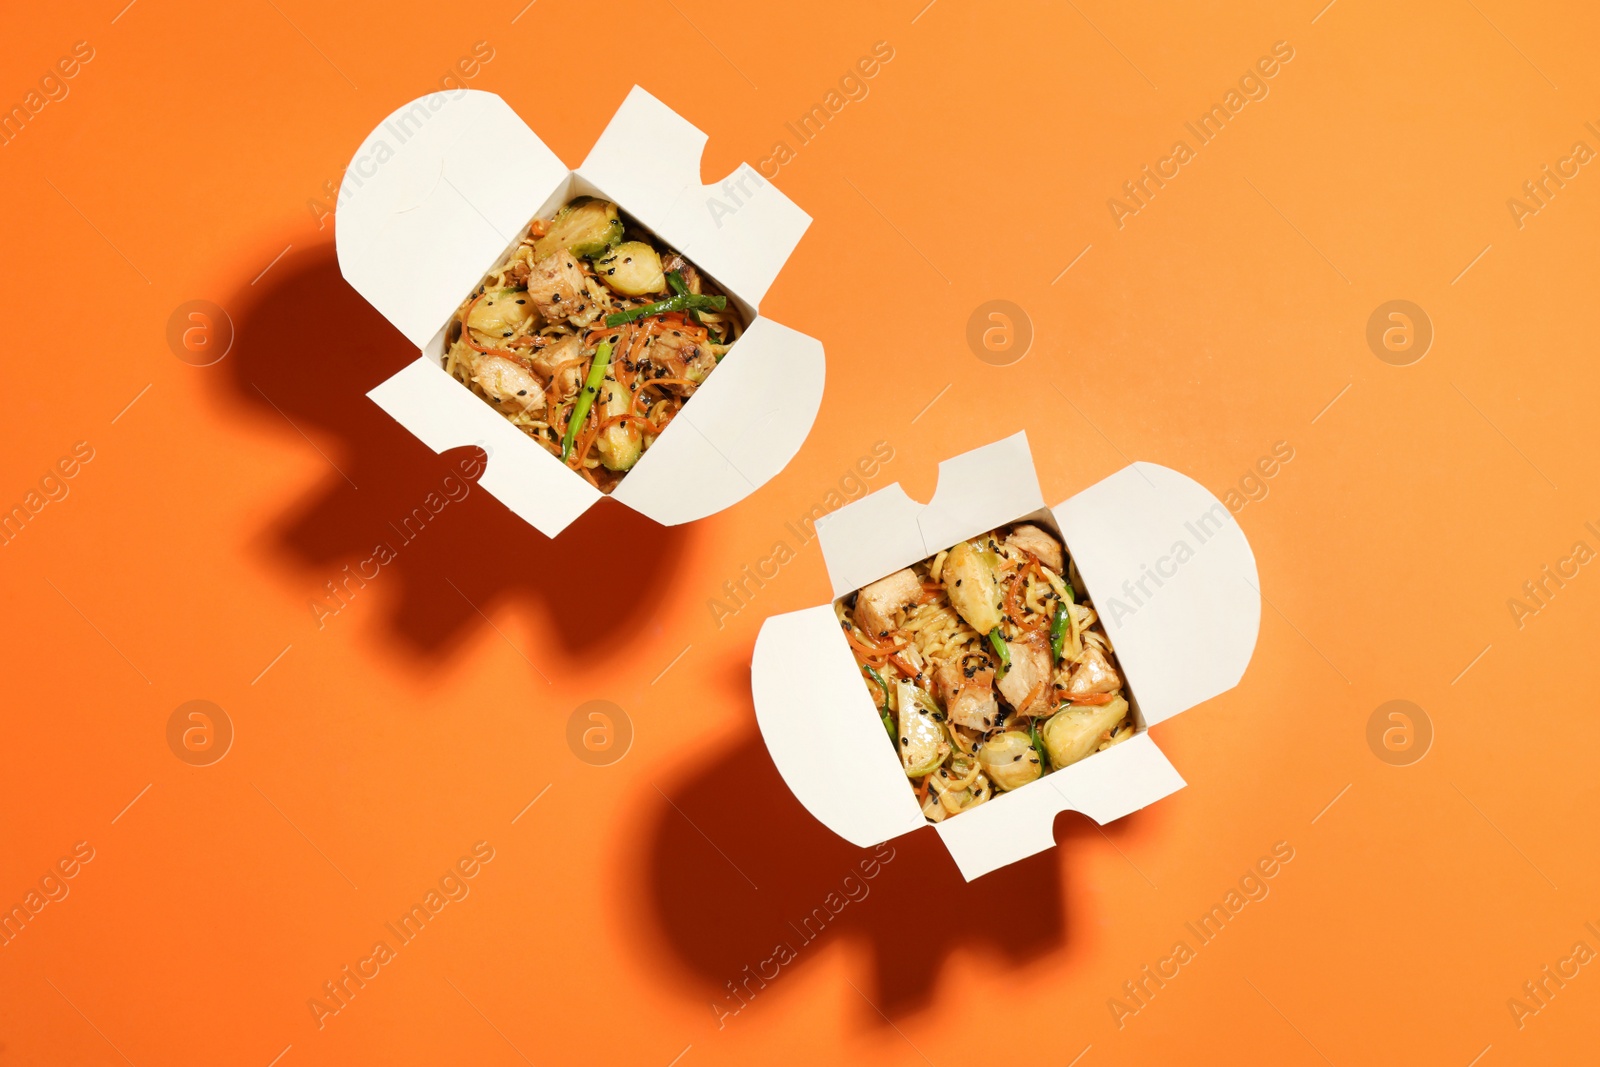 Photo of Boxes of noodle wok on orange background, flat lay